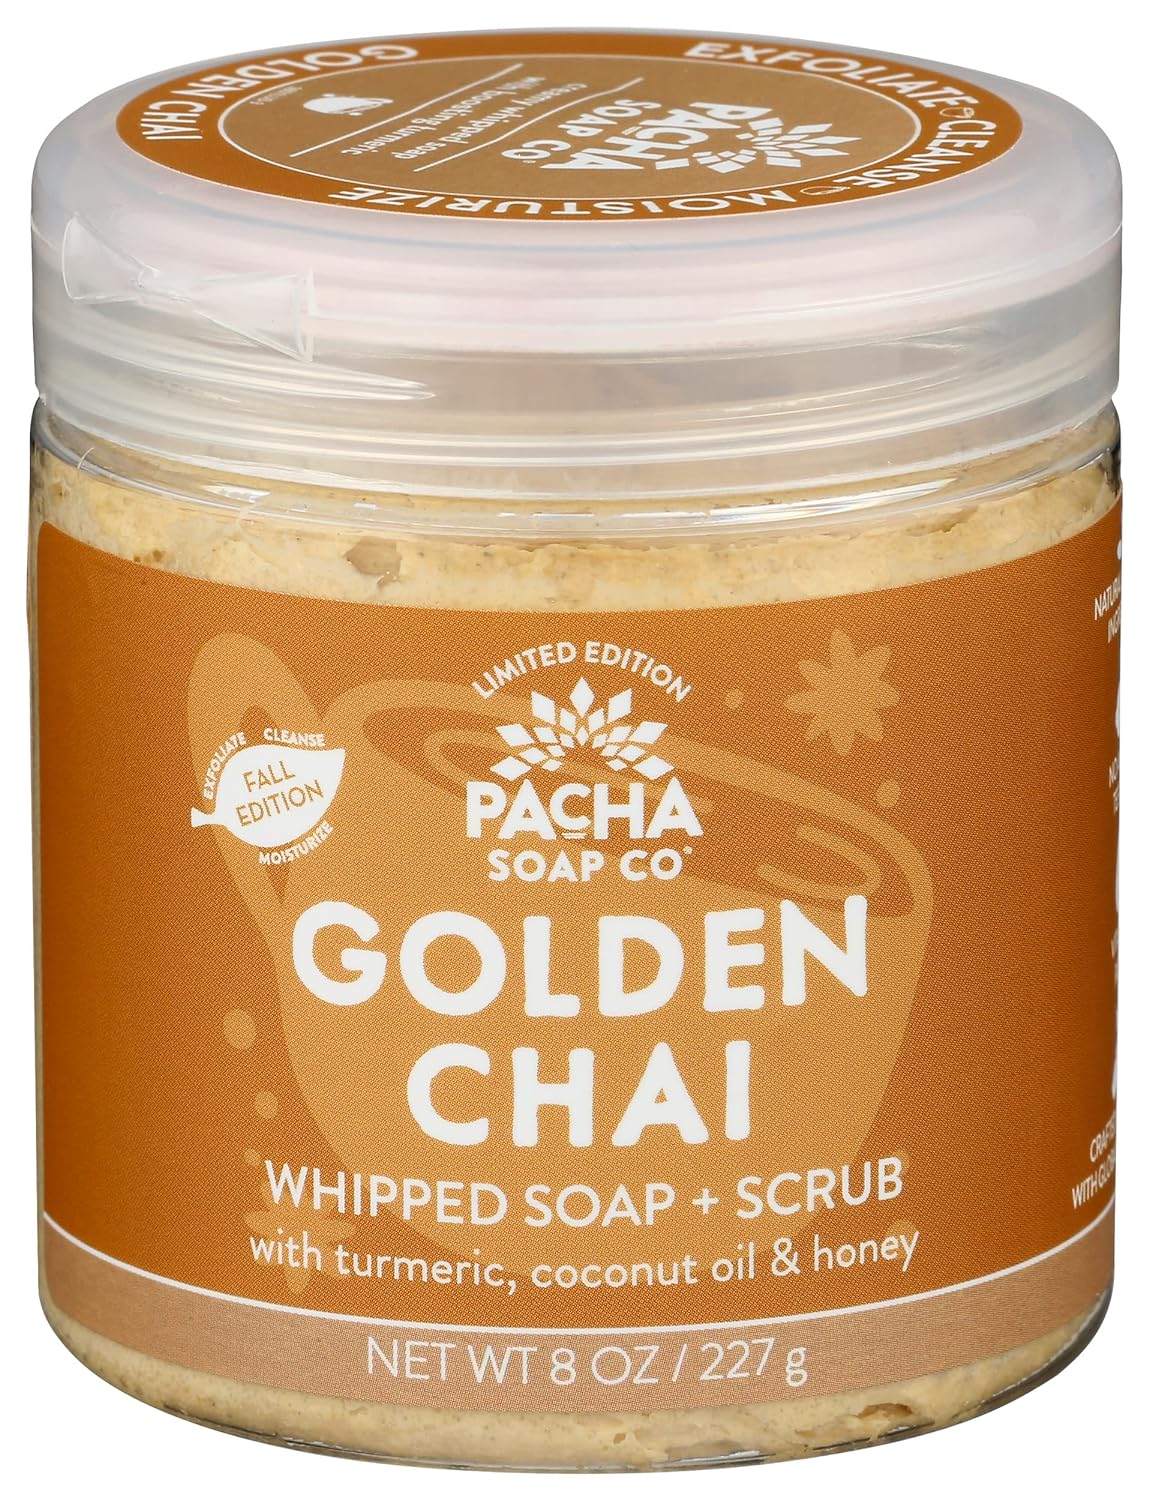 PACHA SOAP Golden Chai Whipped Soap & Scrub, 8